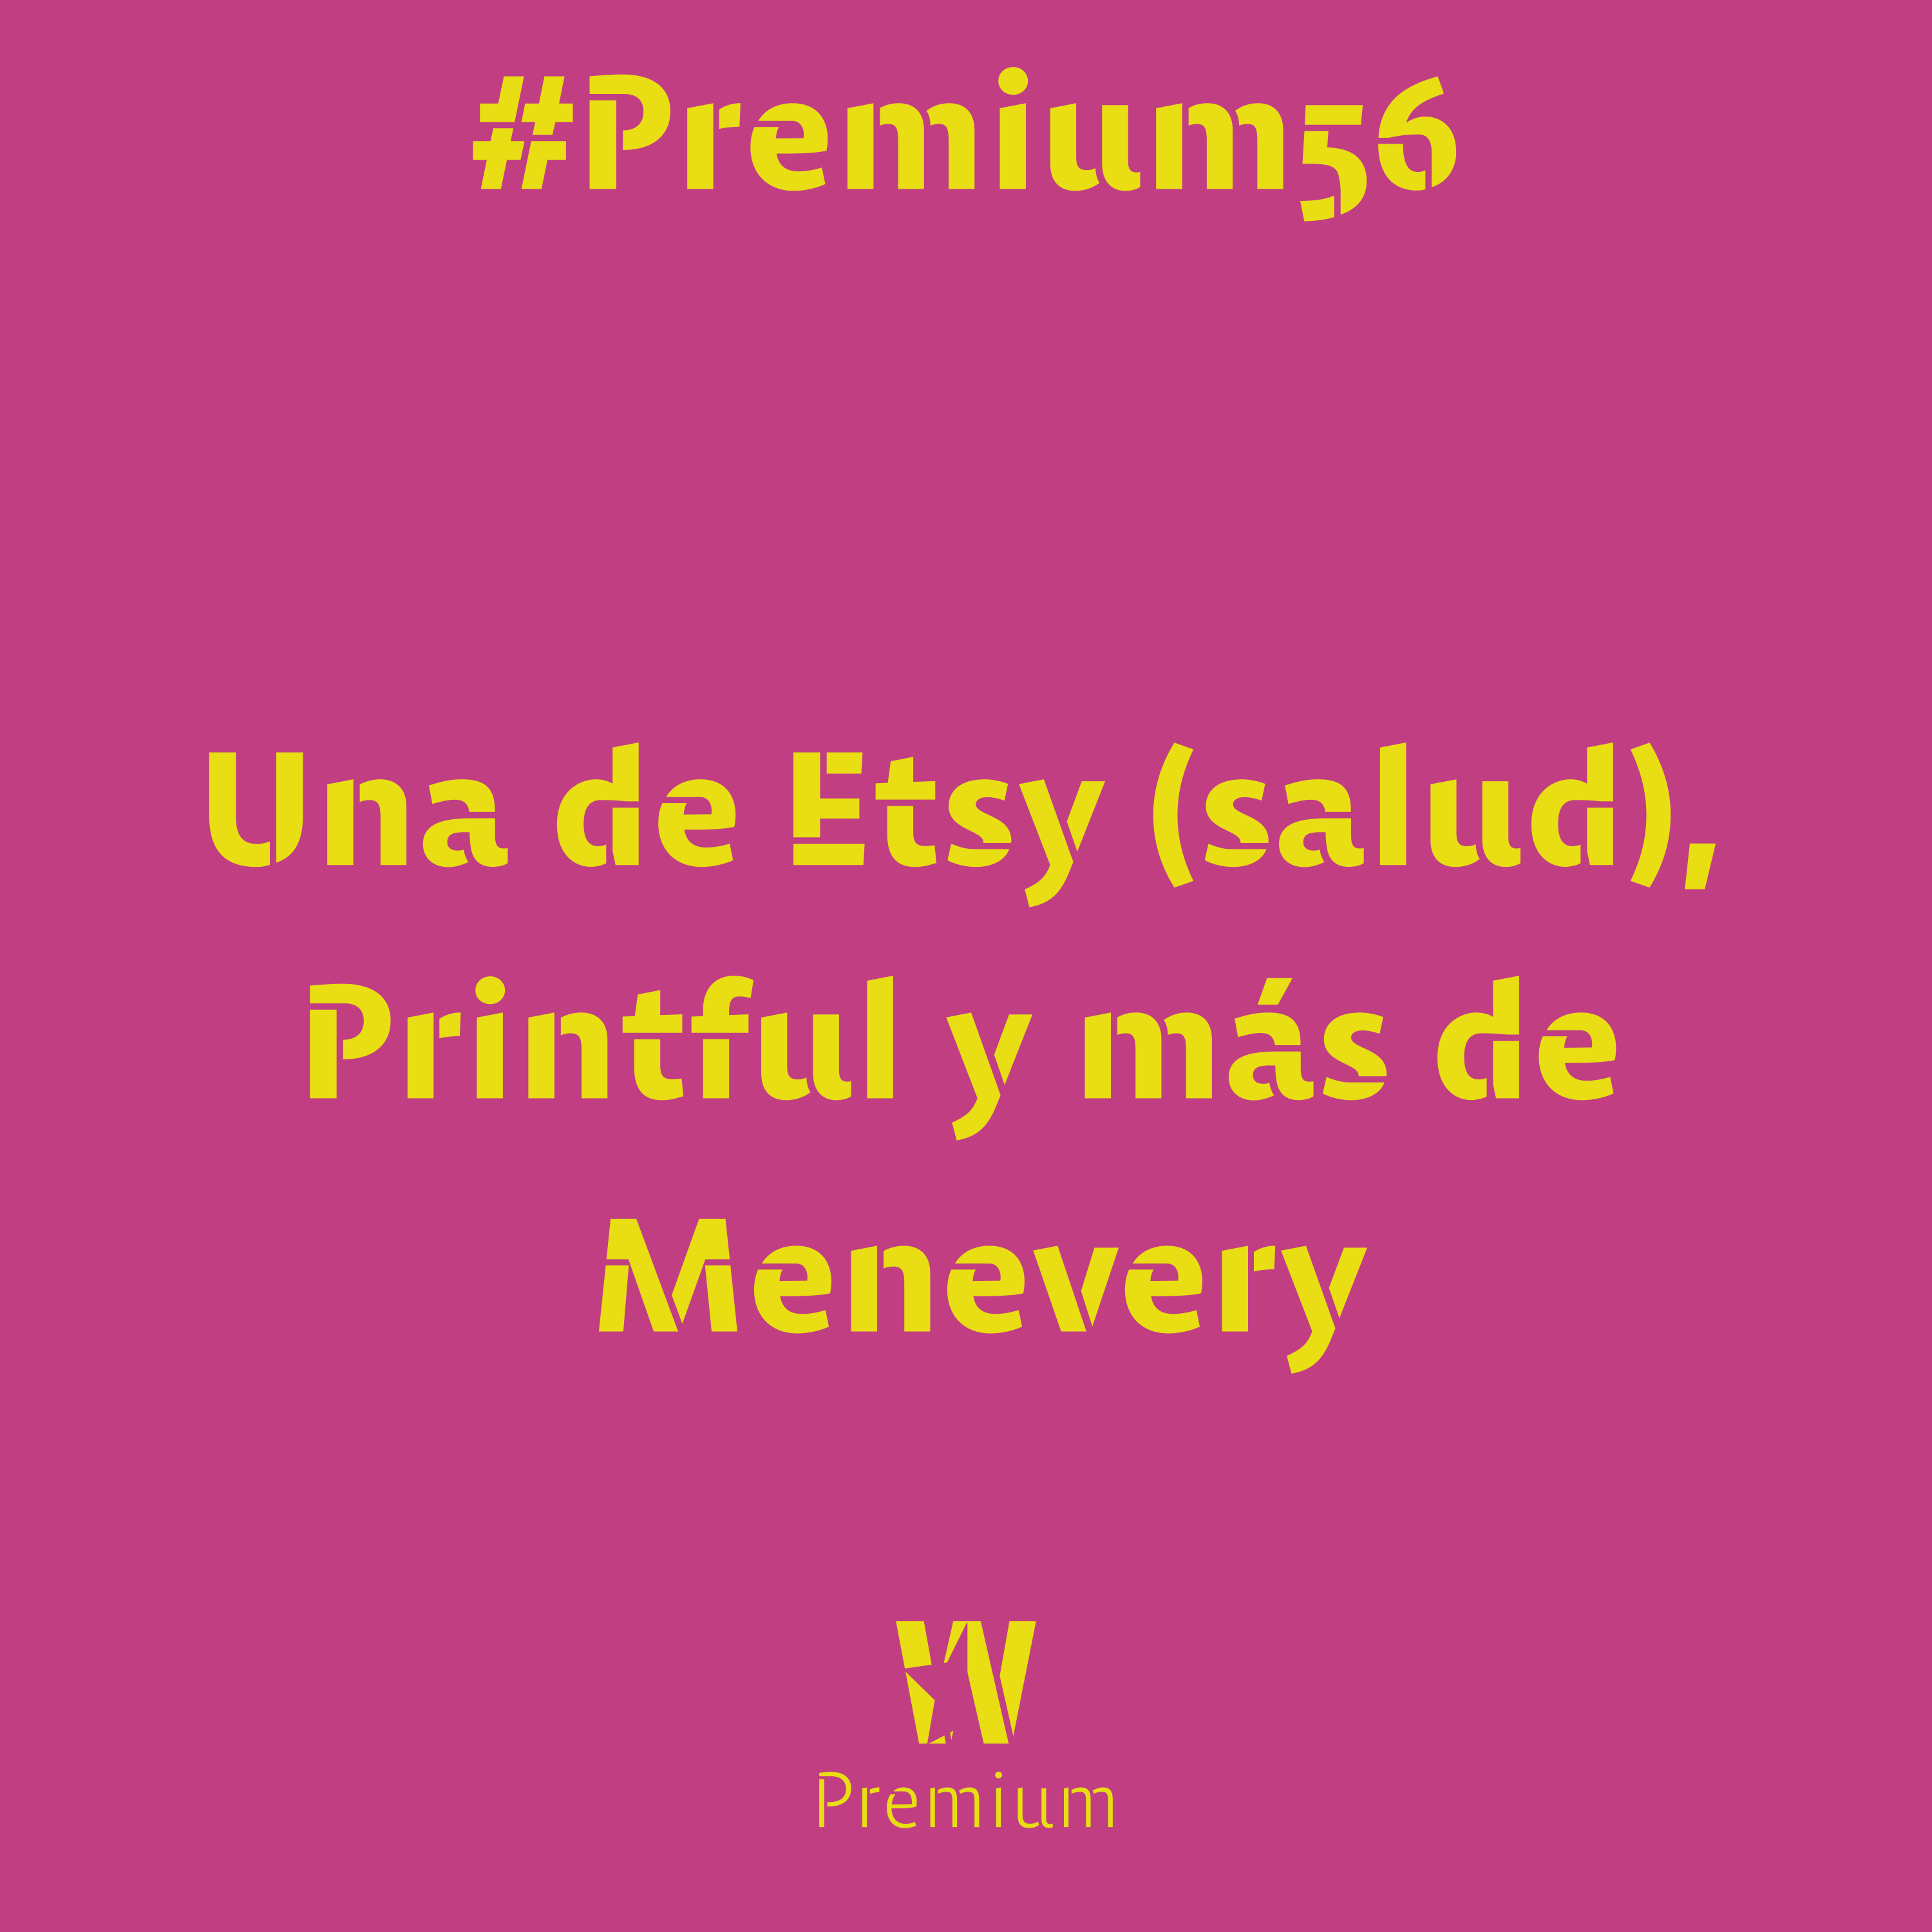 #Premium56 - Una de Etsy (salud), Printful y más de Menevery